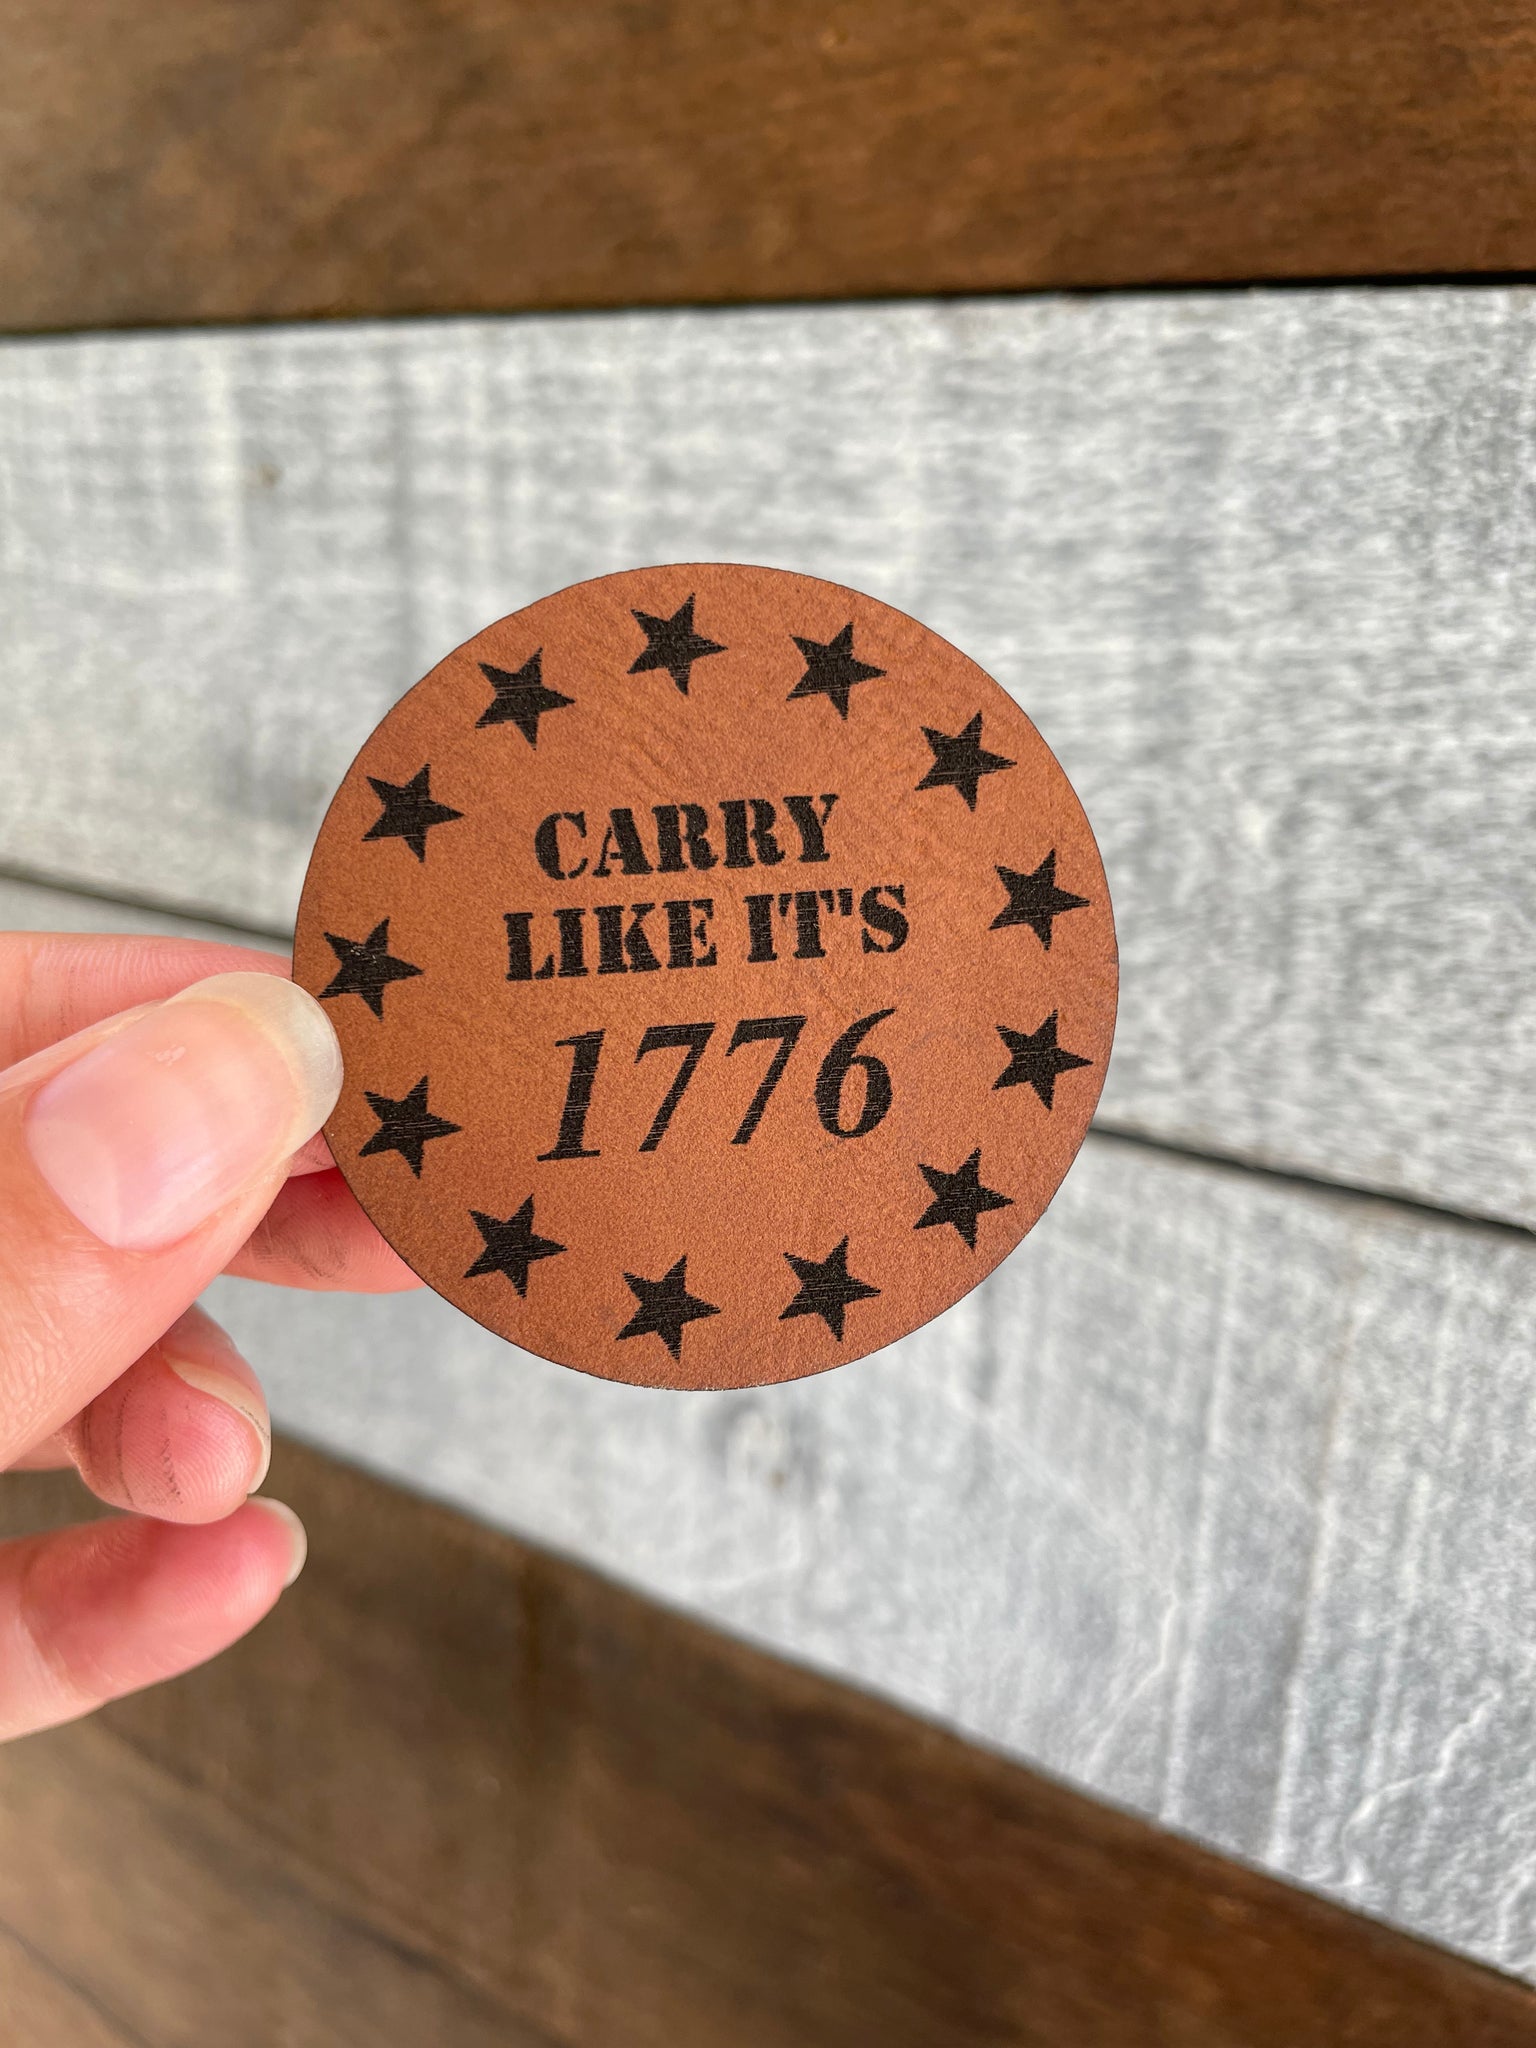 Carry like its 1776